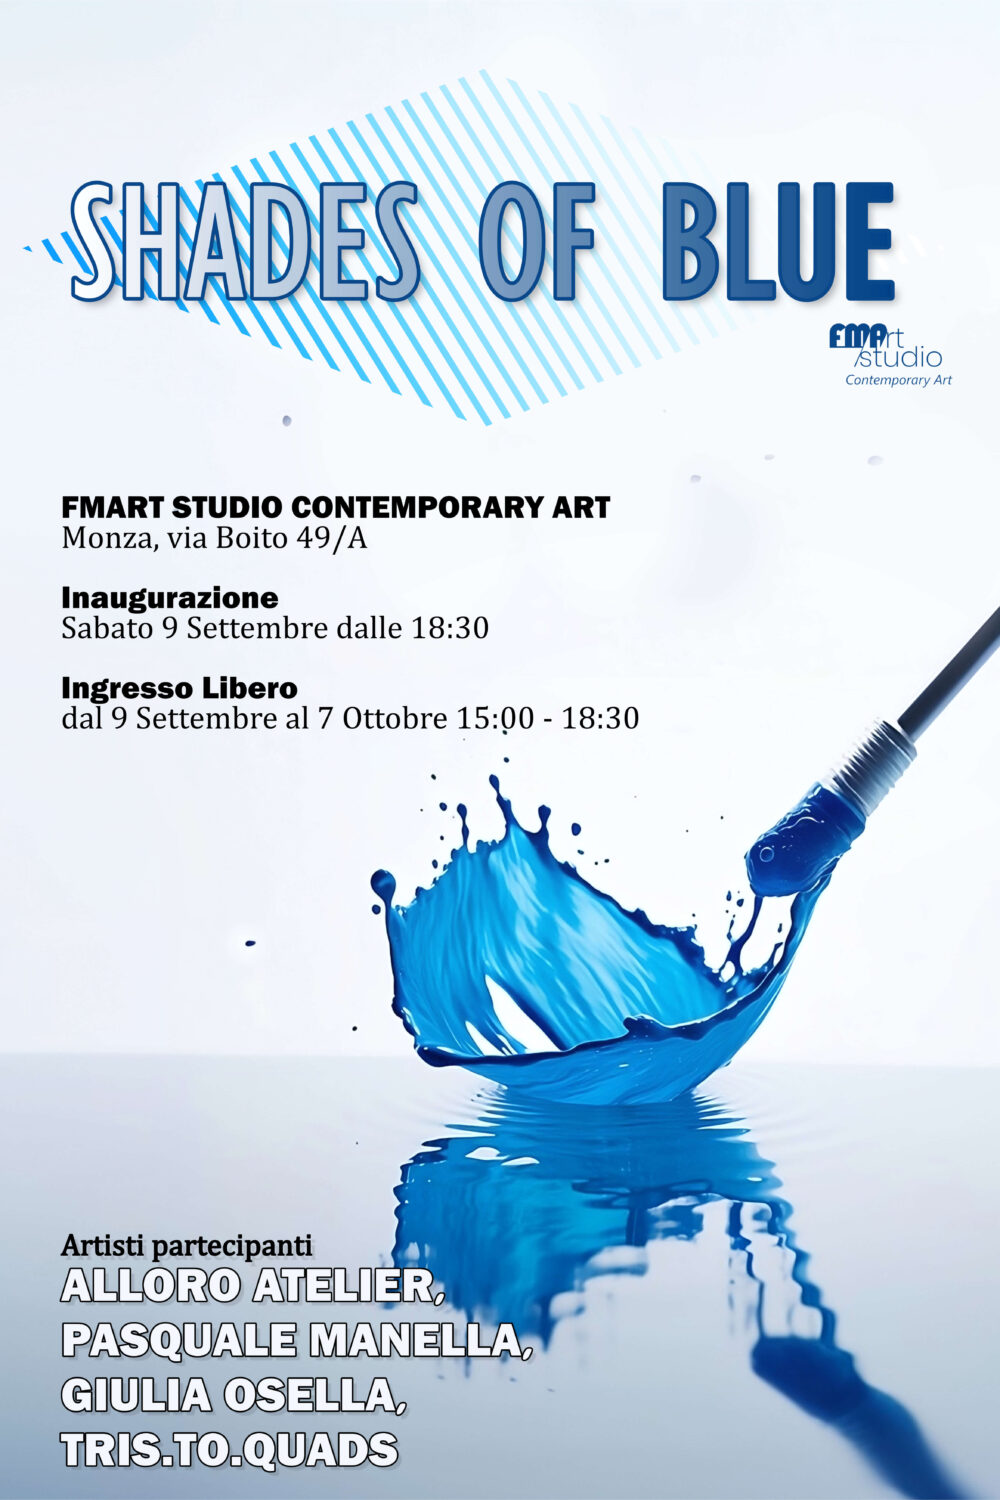 <span>Alloro Atelier – Giulia Osella – Pasquale Manella – Tris.To.Quads</span> <br>Shades of Blue